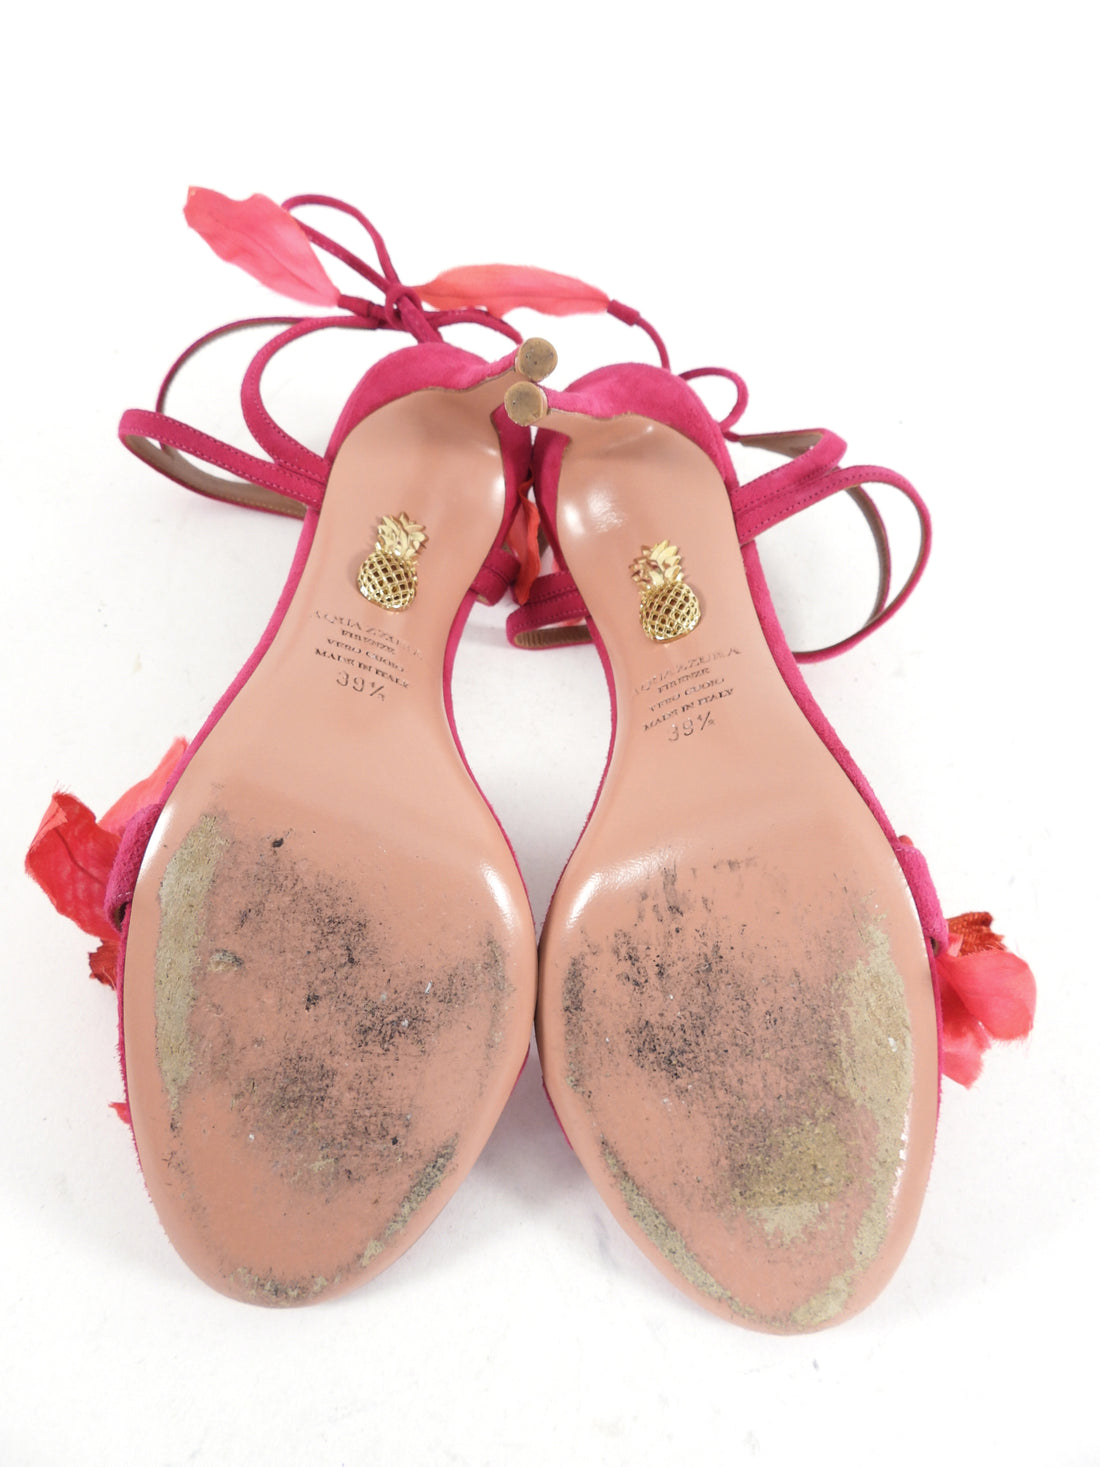 Aquazzura Pink Suede Floral 105 Sandals - 39.5 (USA 9)